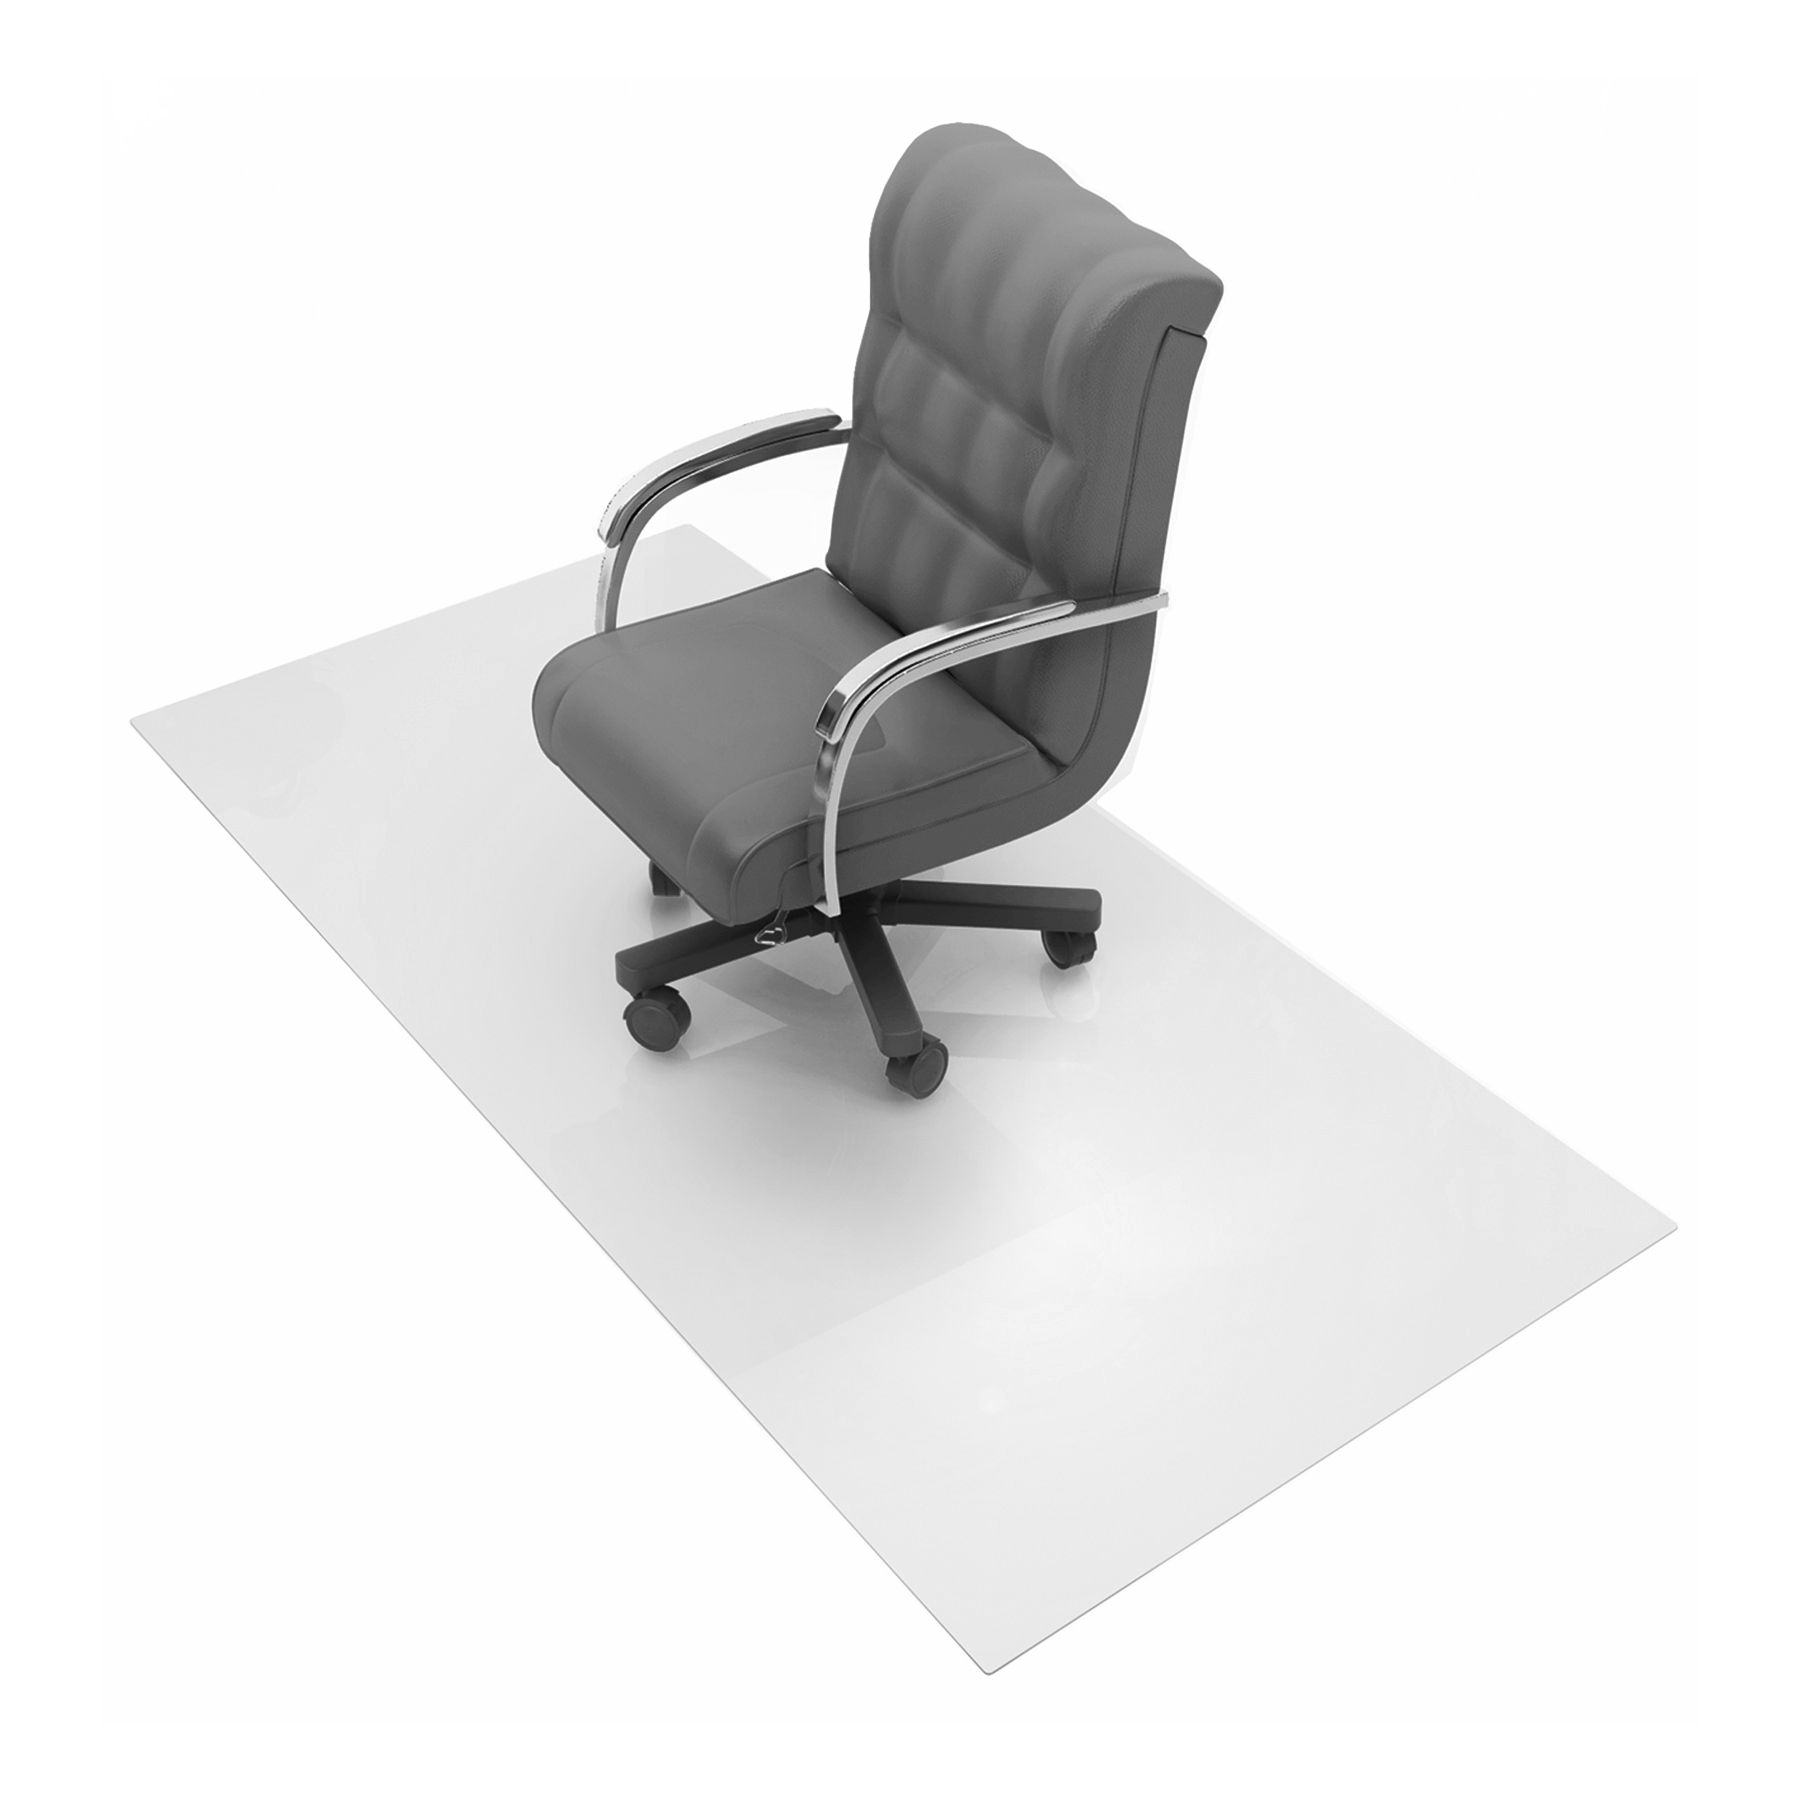 1230025ev Cleartex Advantagemat Pvc Rectangular Chair Mat - 48 X 118 In.